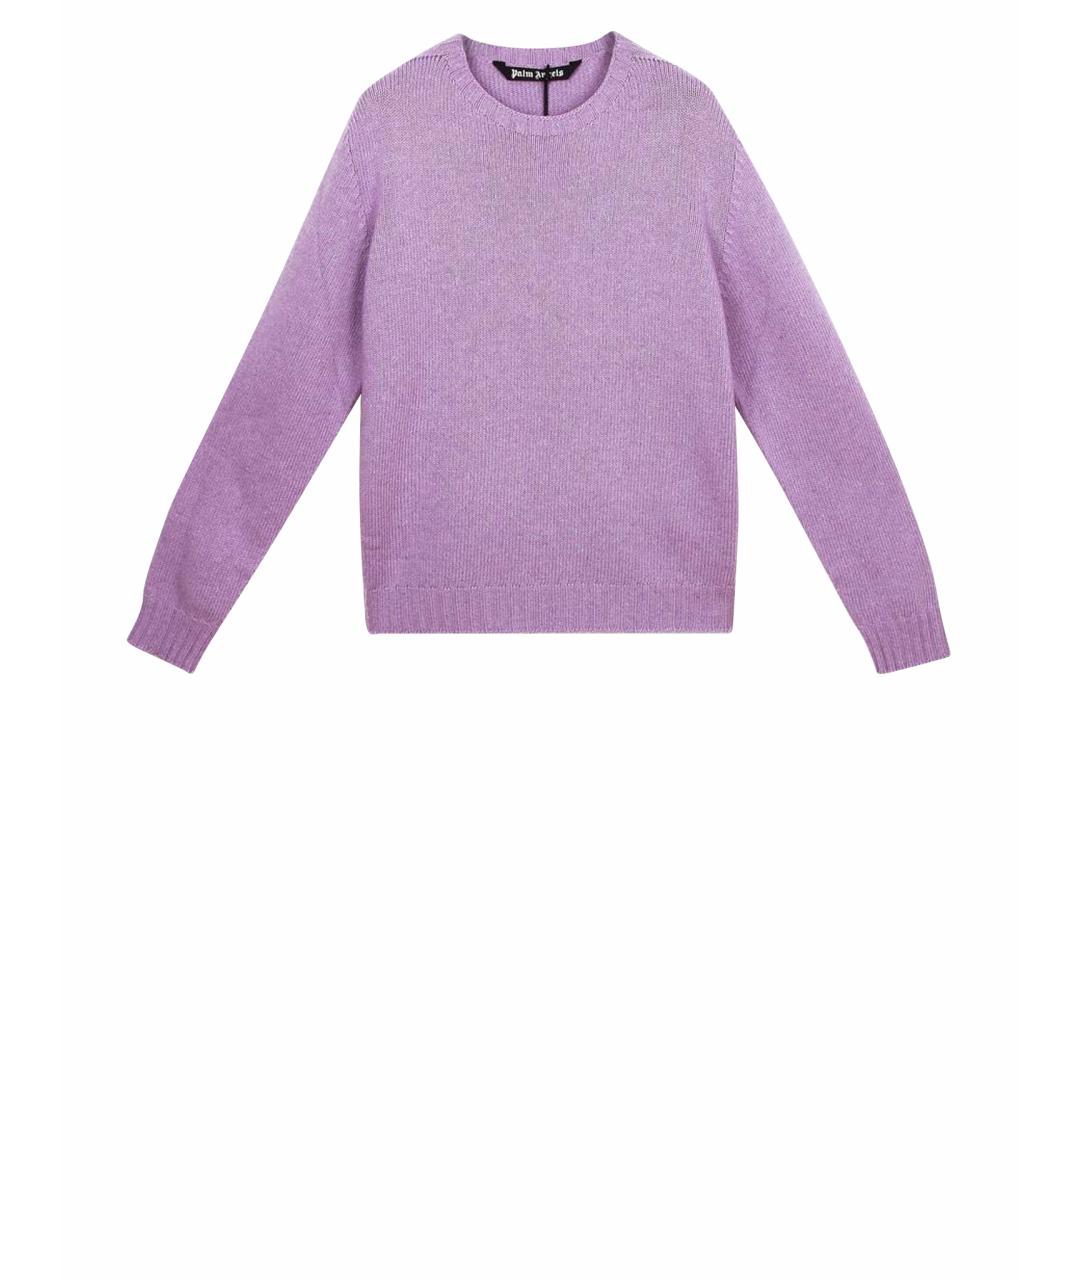 PALM ANGELS Фиолетовый джемпер / свитер, фото 1